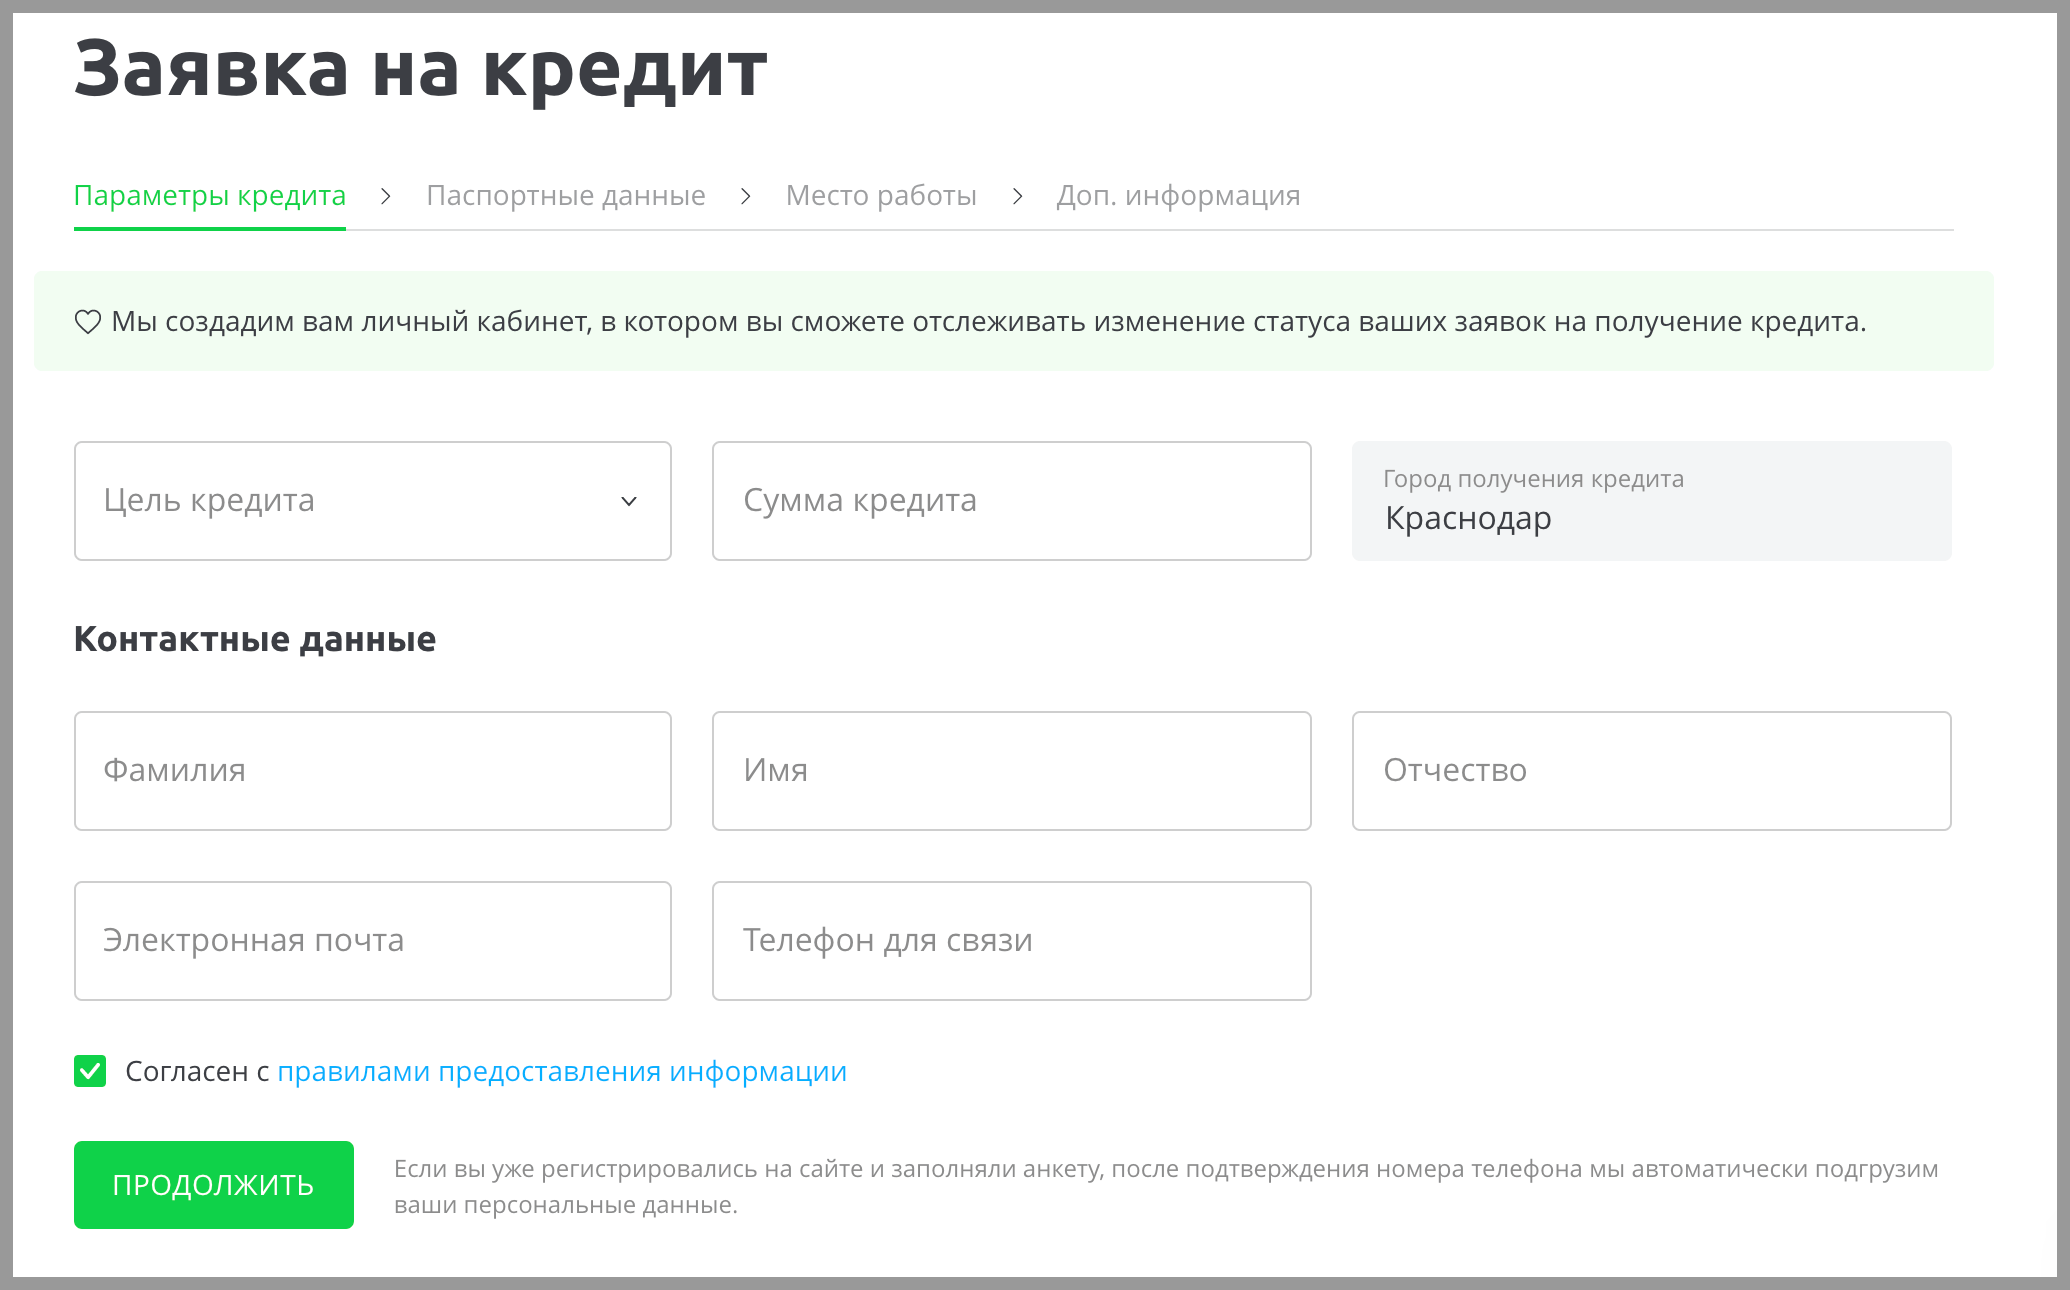 Подбор кредита по банкам онлайн через сервис Сравни.ру